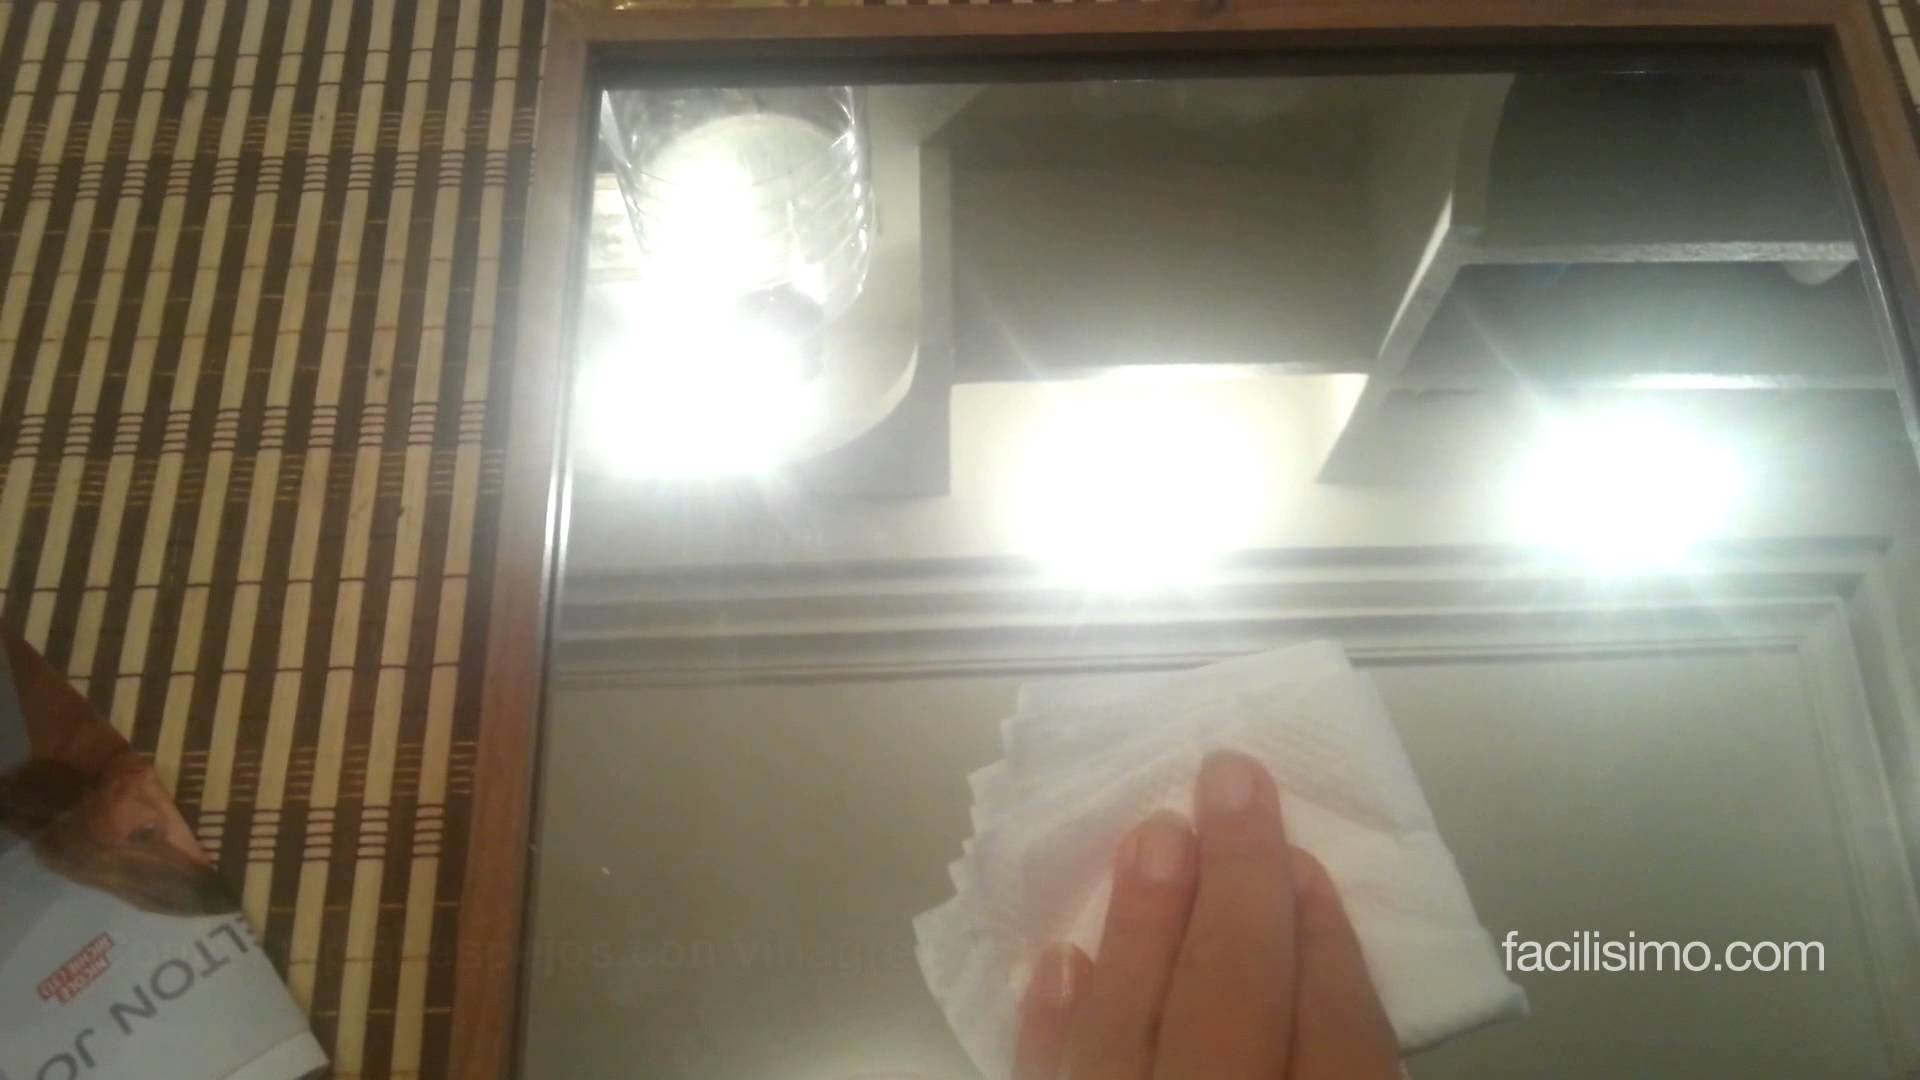 Cómo limpiar espejos con vinagre | facilisimo.com